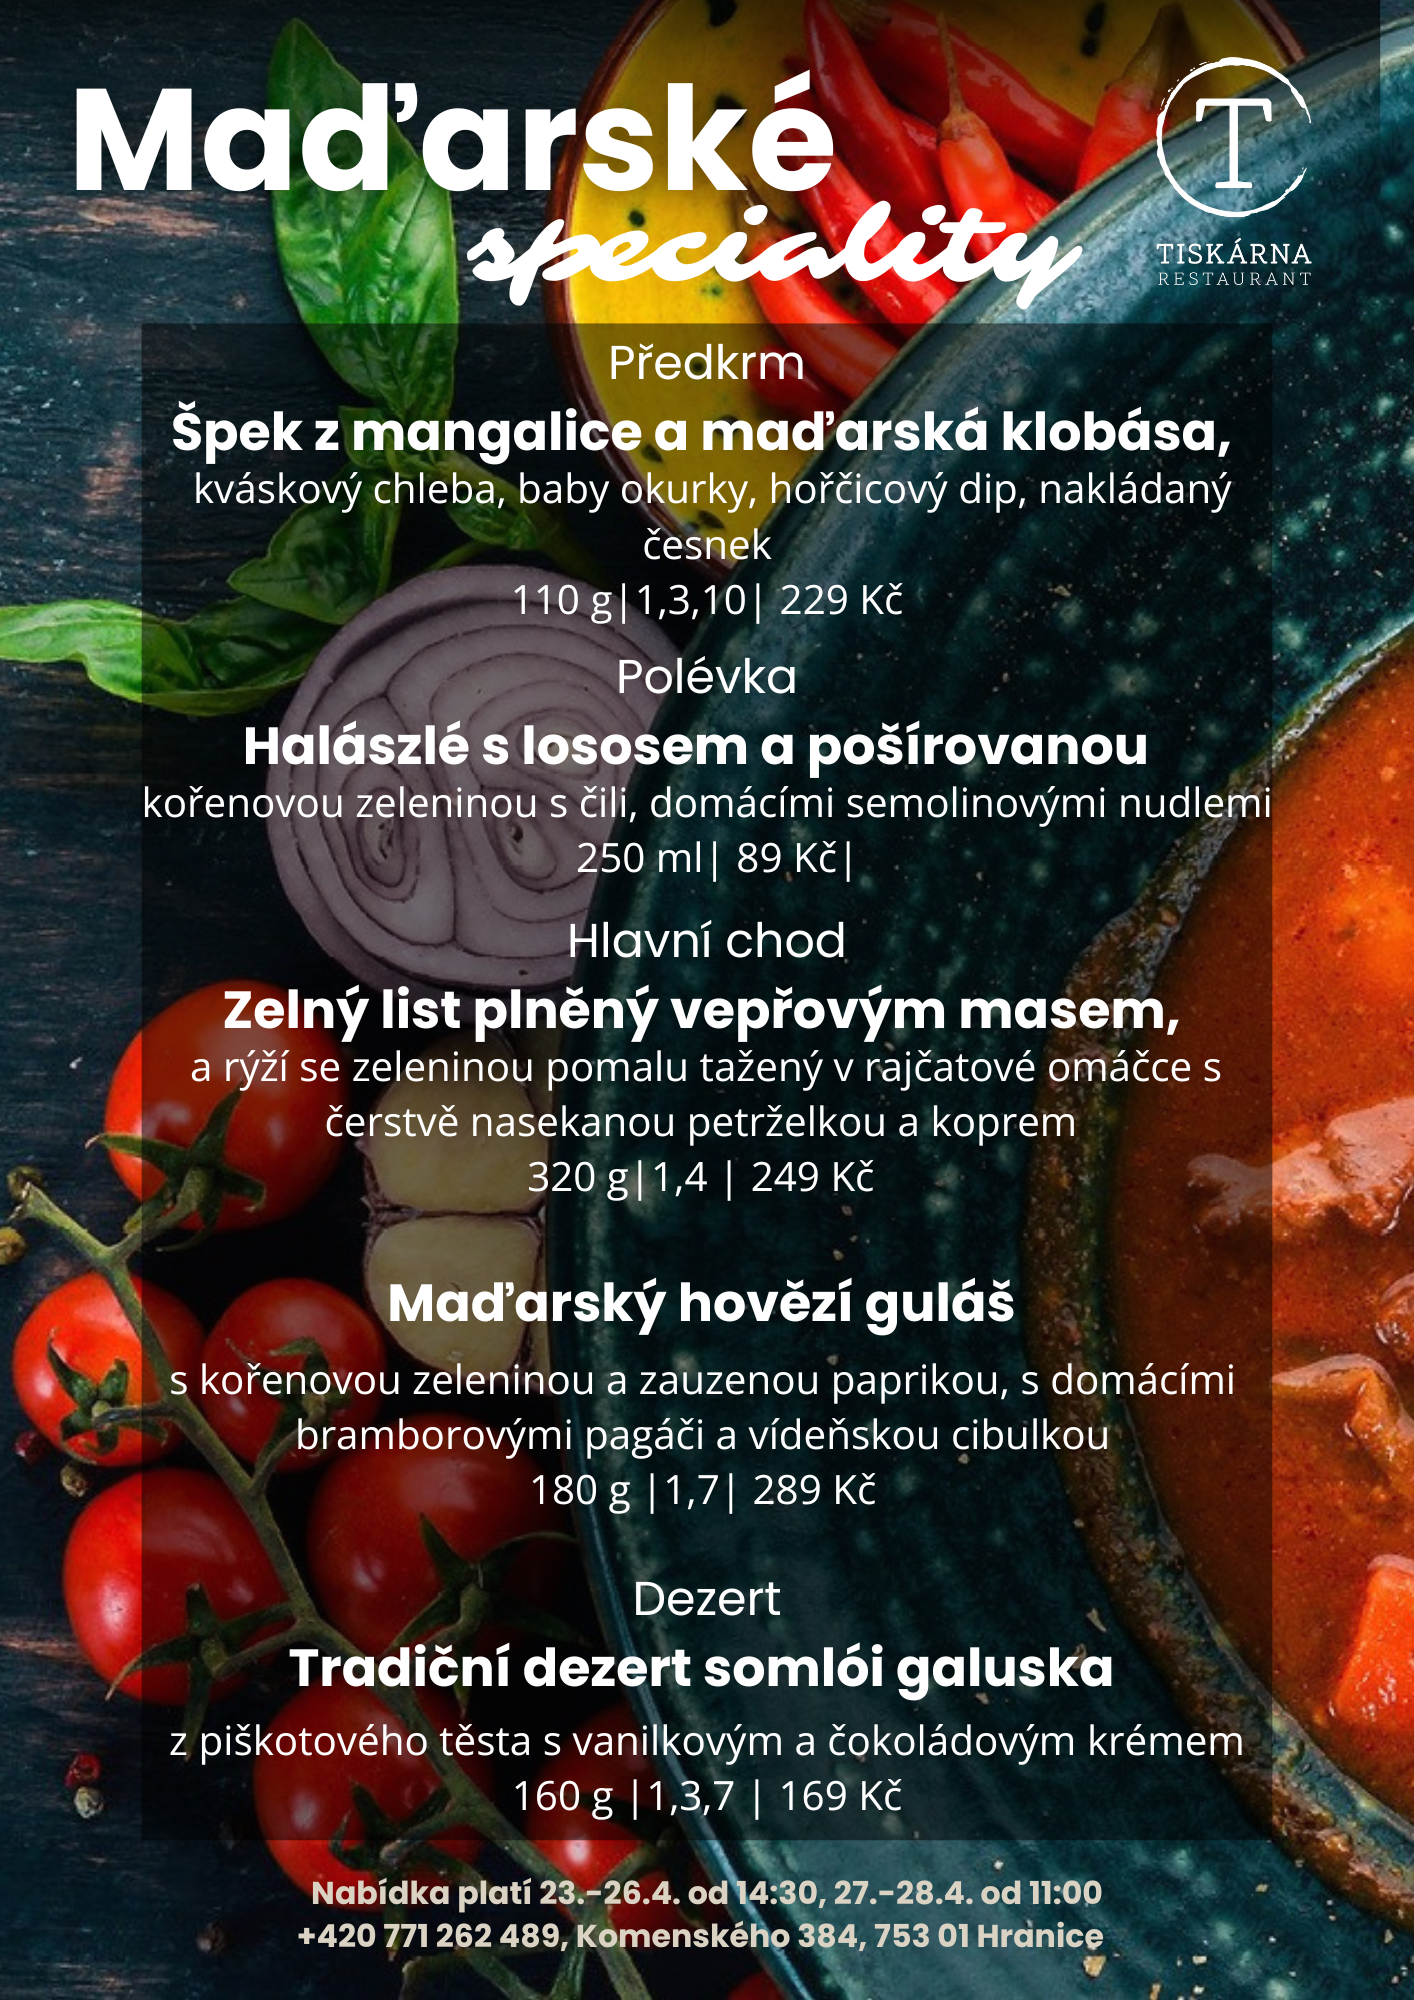 Speciální menu - Maďarské speciality.png